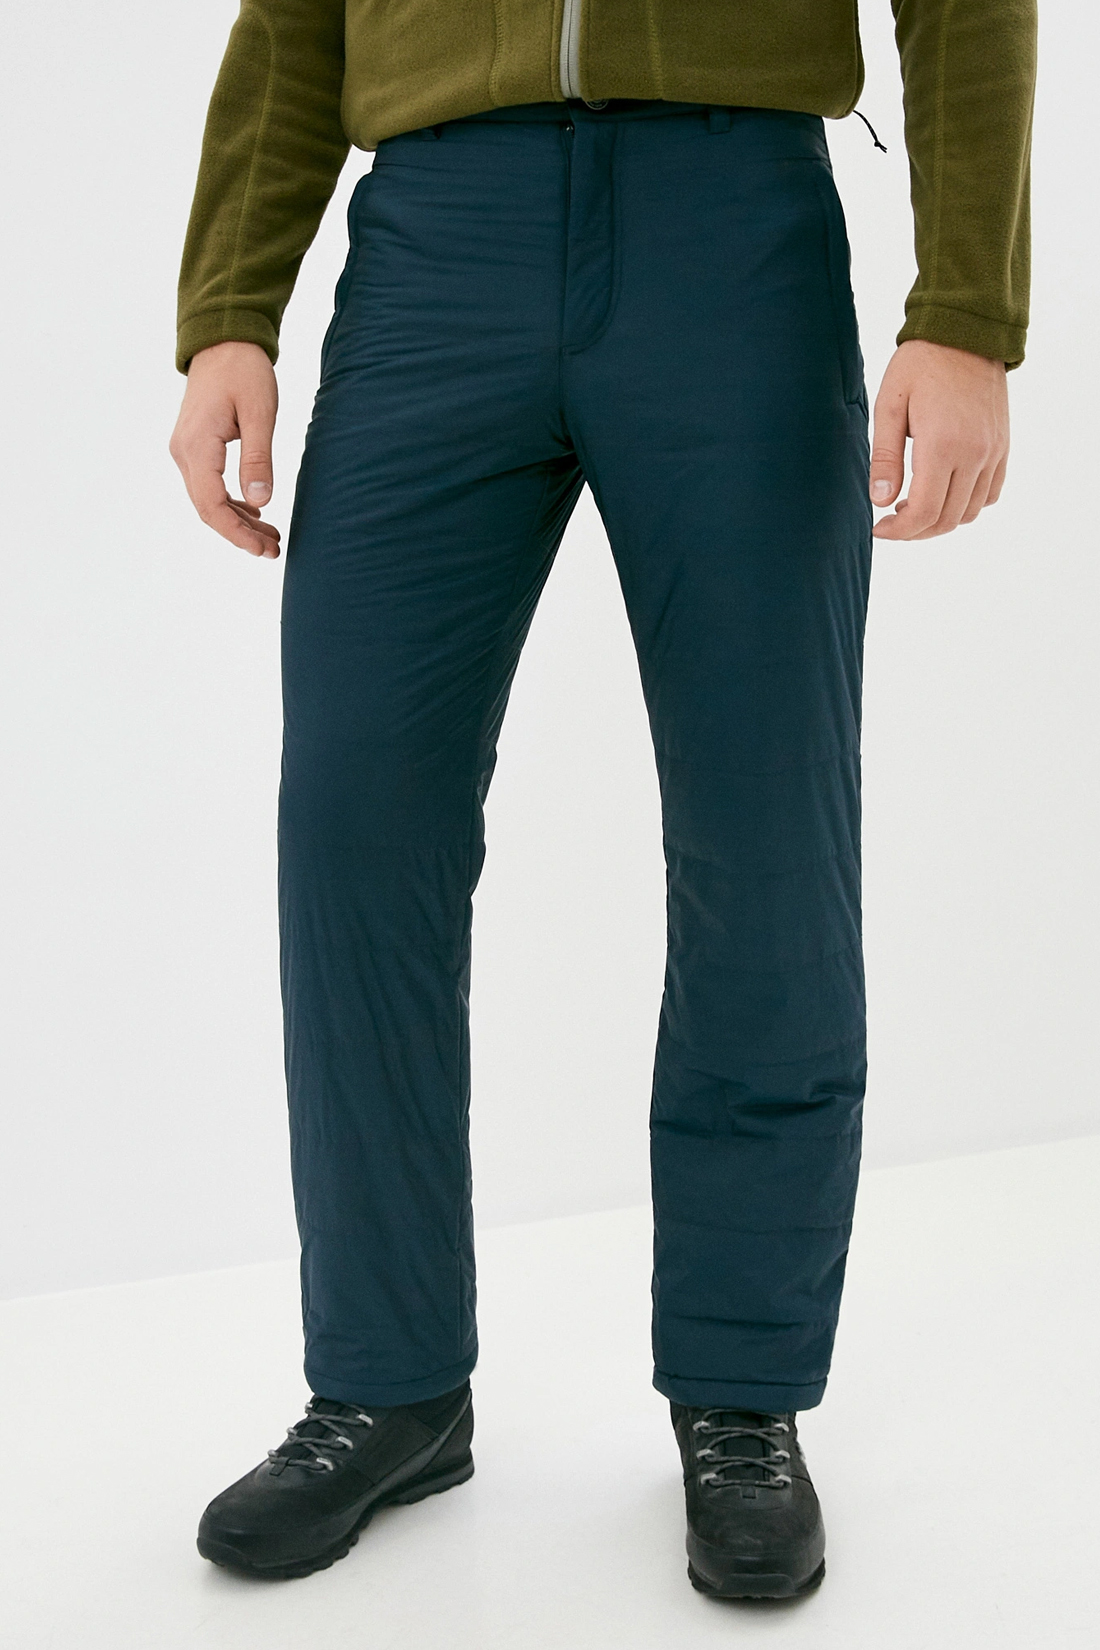 Утеплённые брюки с флисовой подкладкой (арт. baon B590502), размер XL, цвет синий